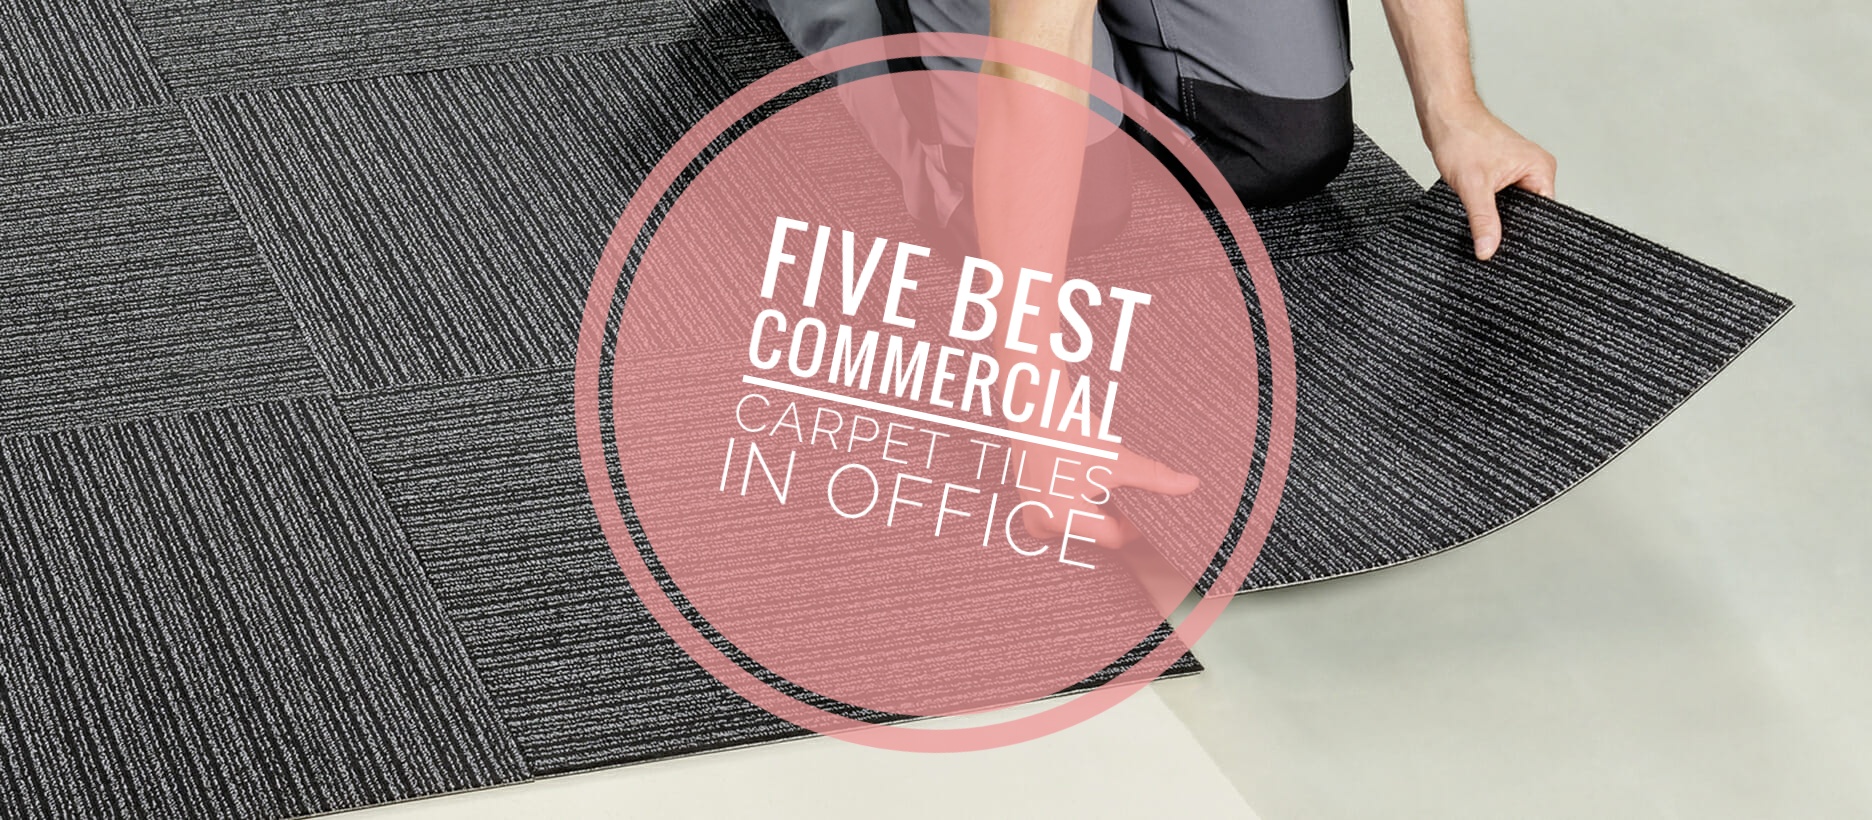 five commercial carpet tiles in office.jpg